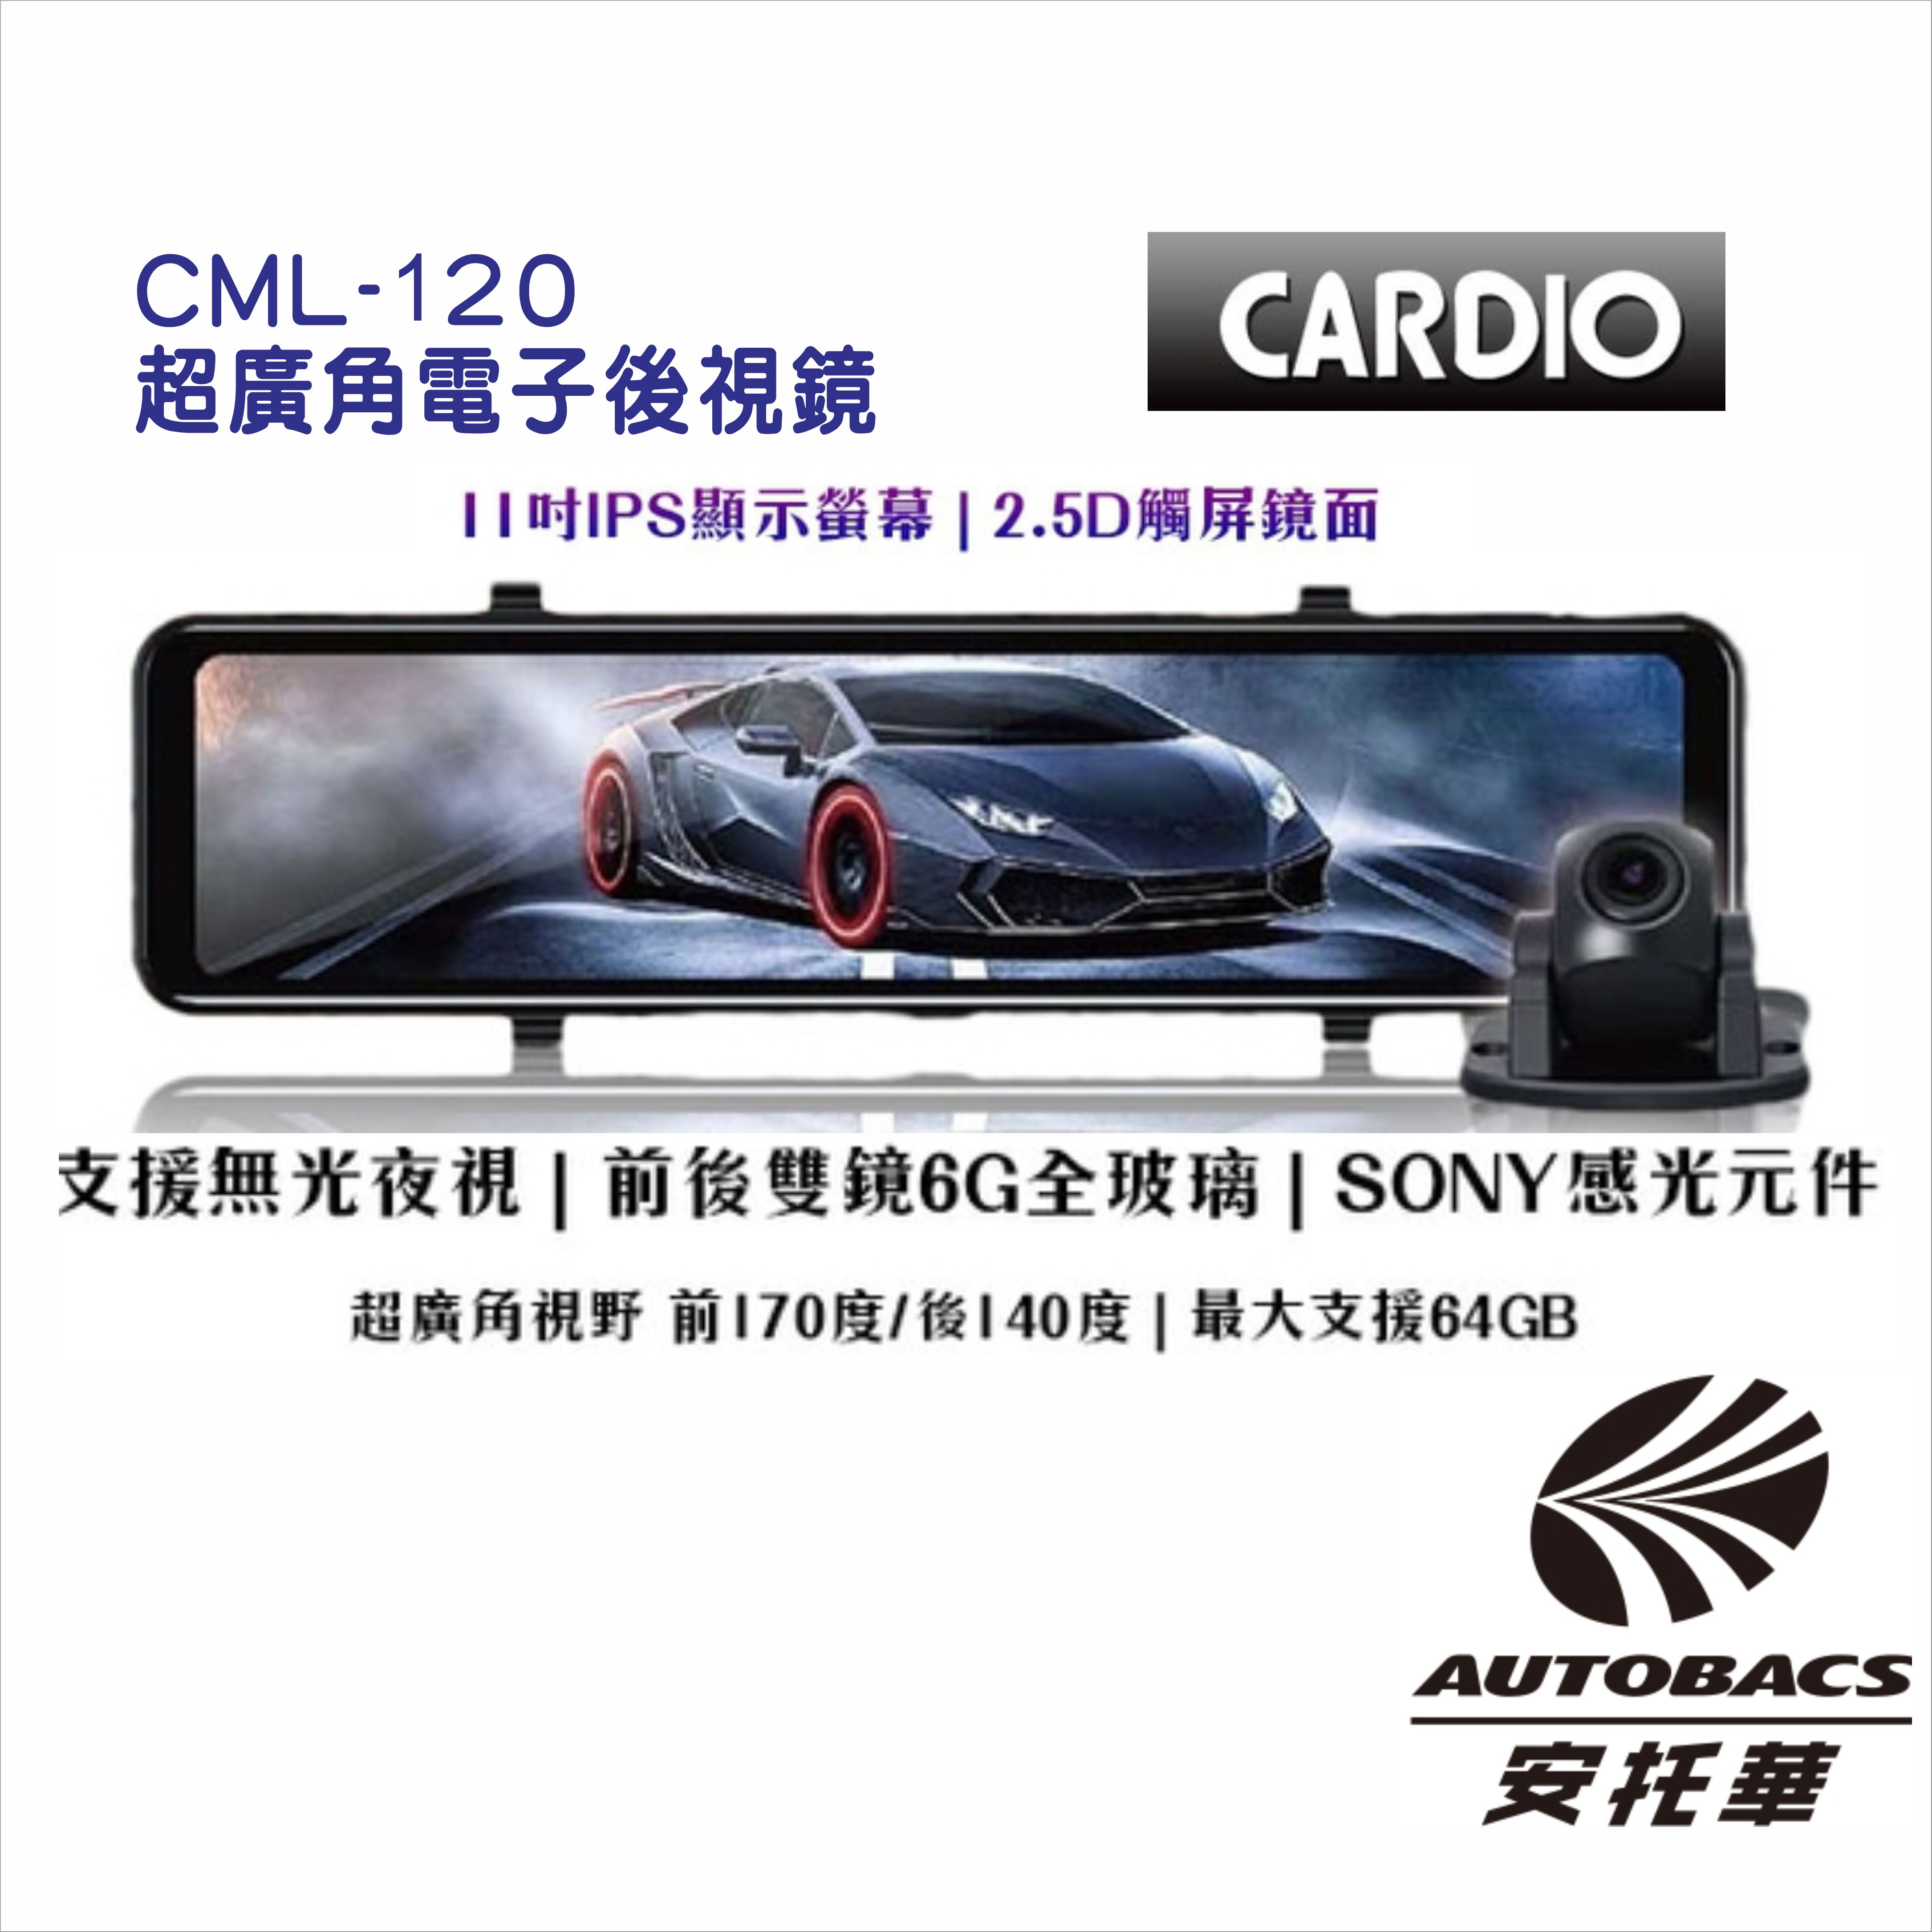 【CARDIO】CML-120S 超廣角電子後視鏡 前後行車紀錄器 1080P/SONY感光元件/支援無光夜視/內建測速【此賣場為只買商品不安裝】